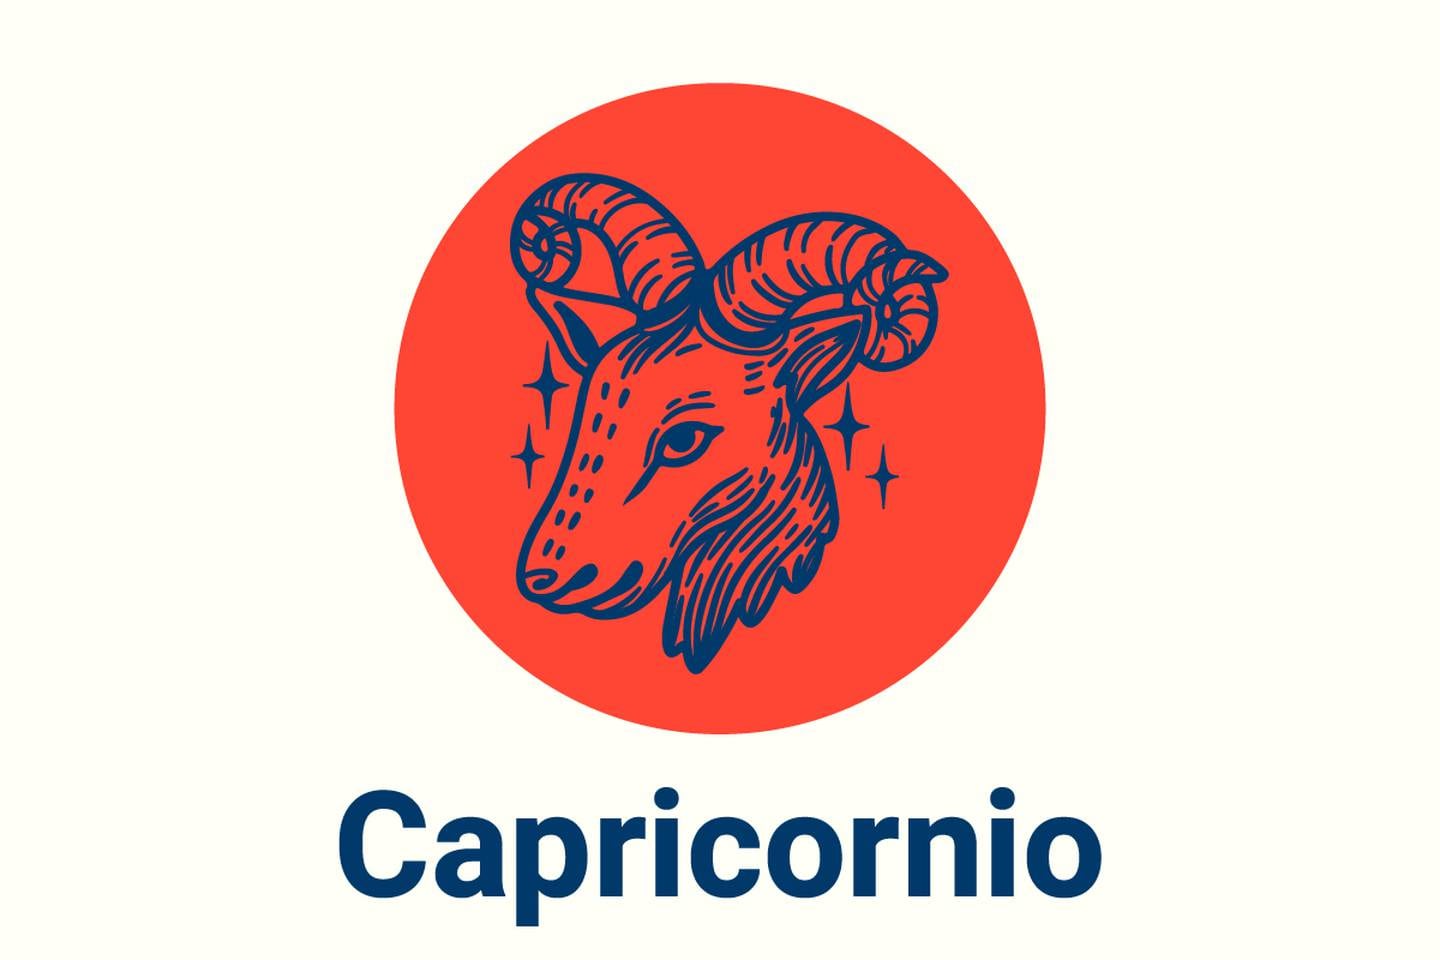 Imagen con el símbolo del signo zodiacal Capricornio.